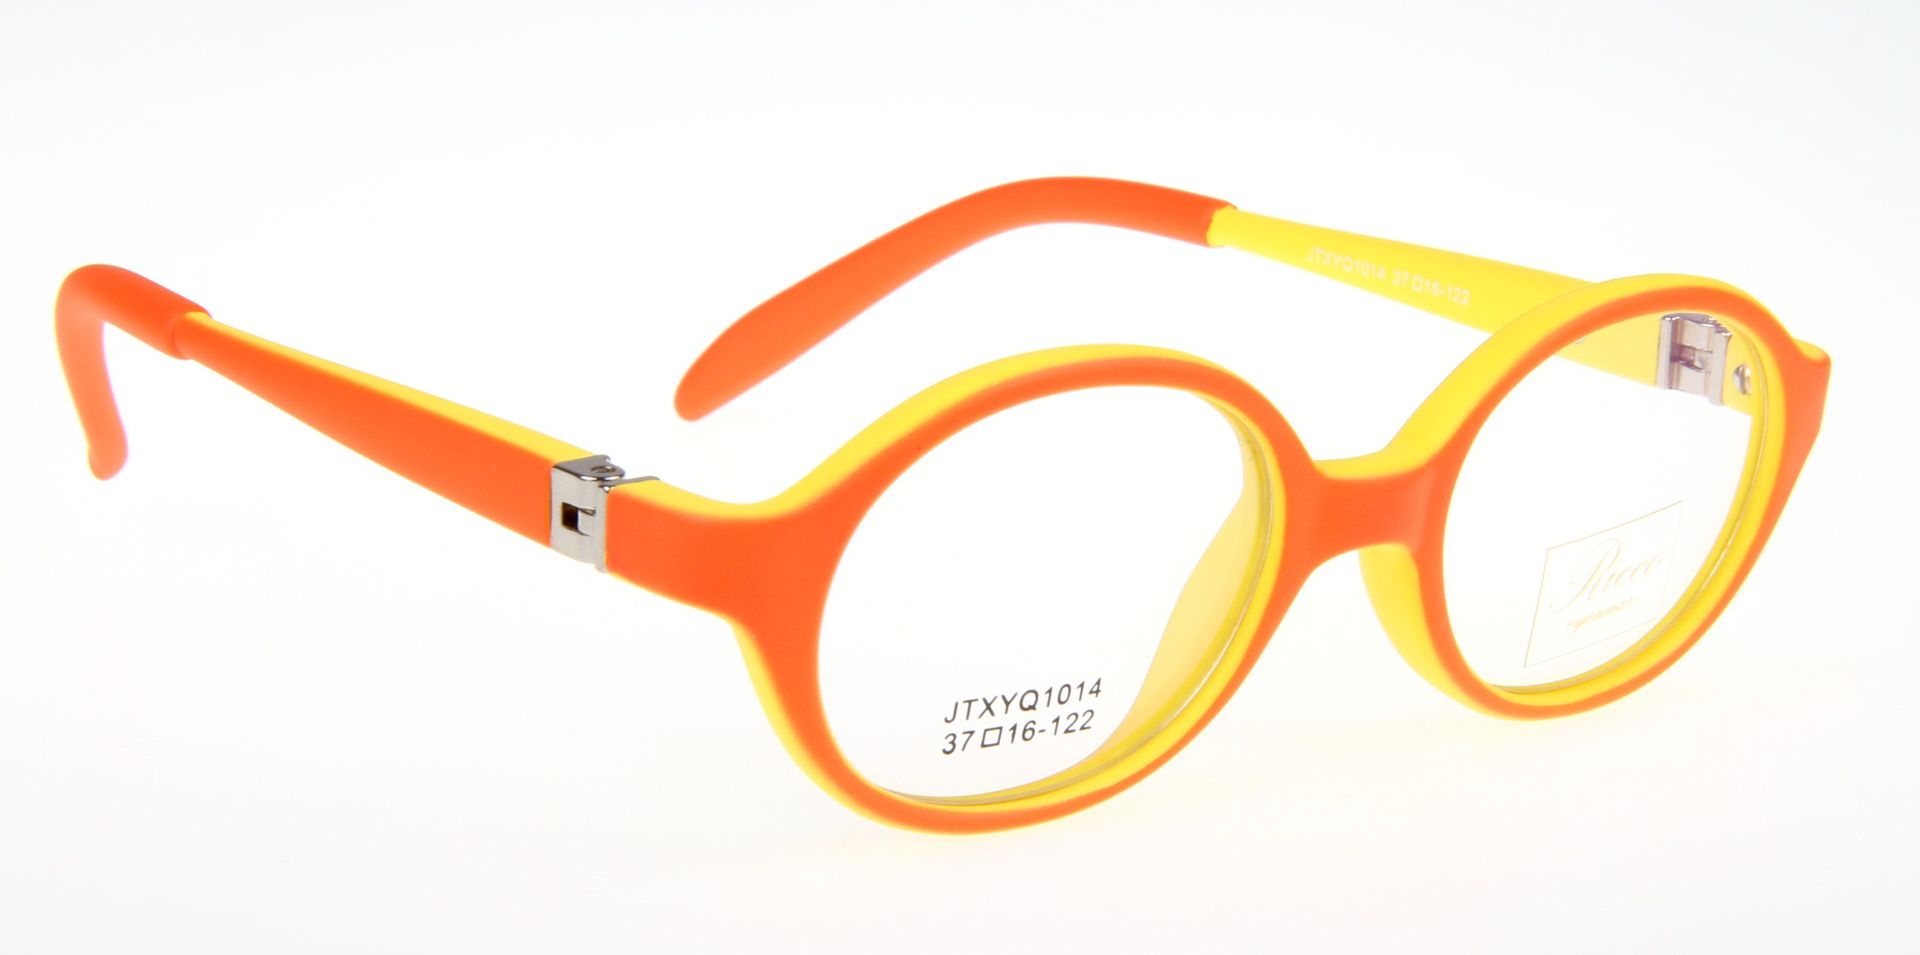 Oprawki okularowe RICCO KIDS JTXYQ 1014 C3 pomarańczowo-żółte